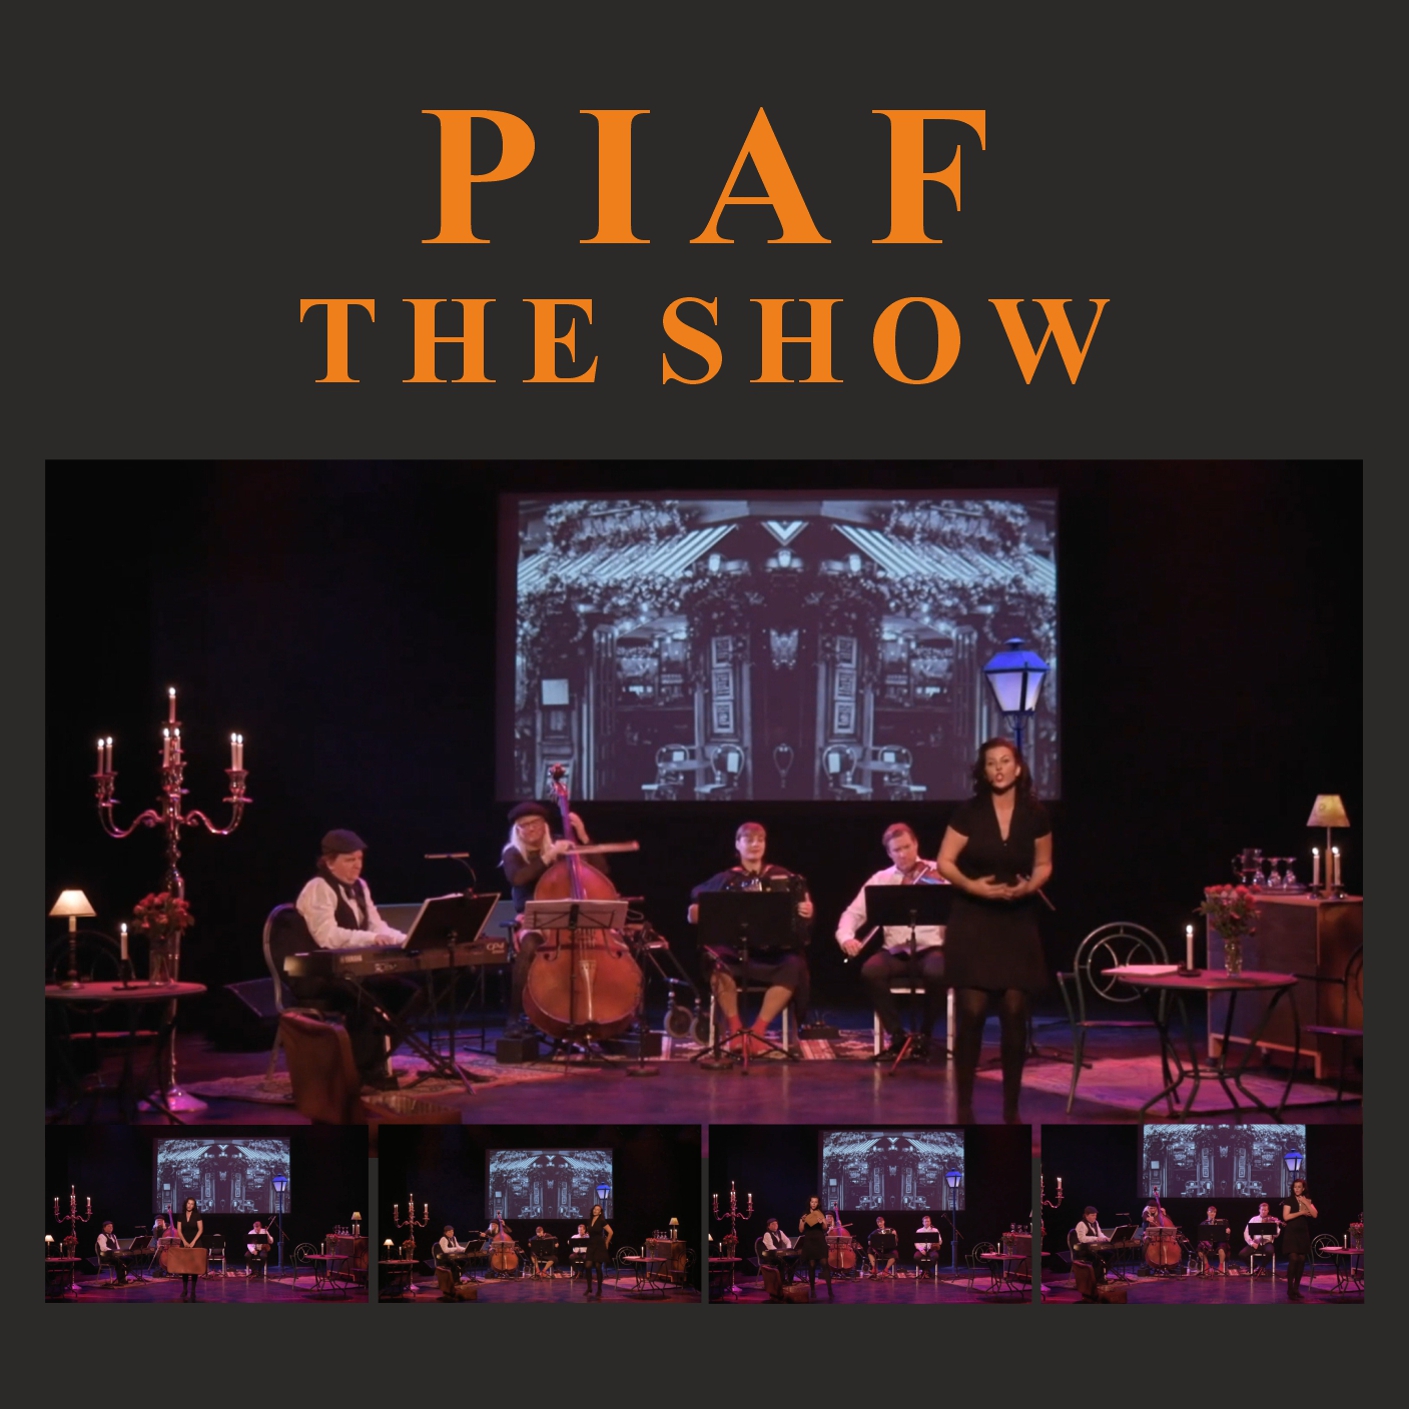 Piaf the show